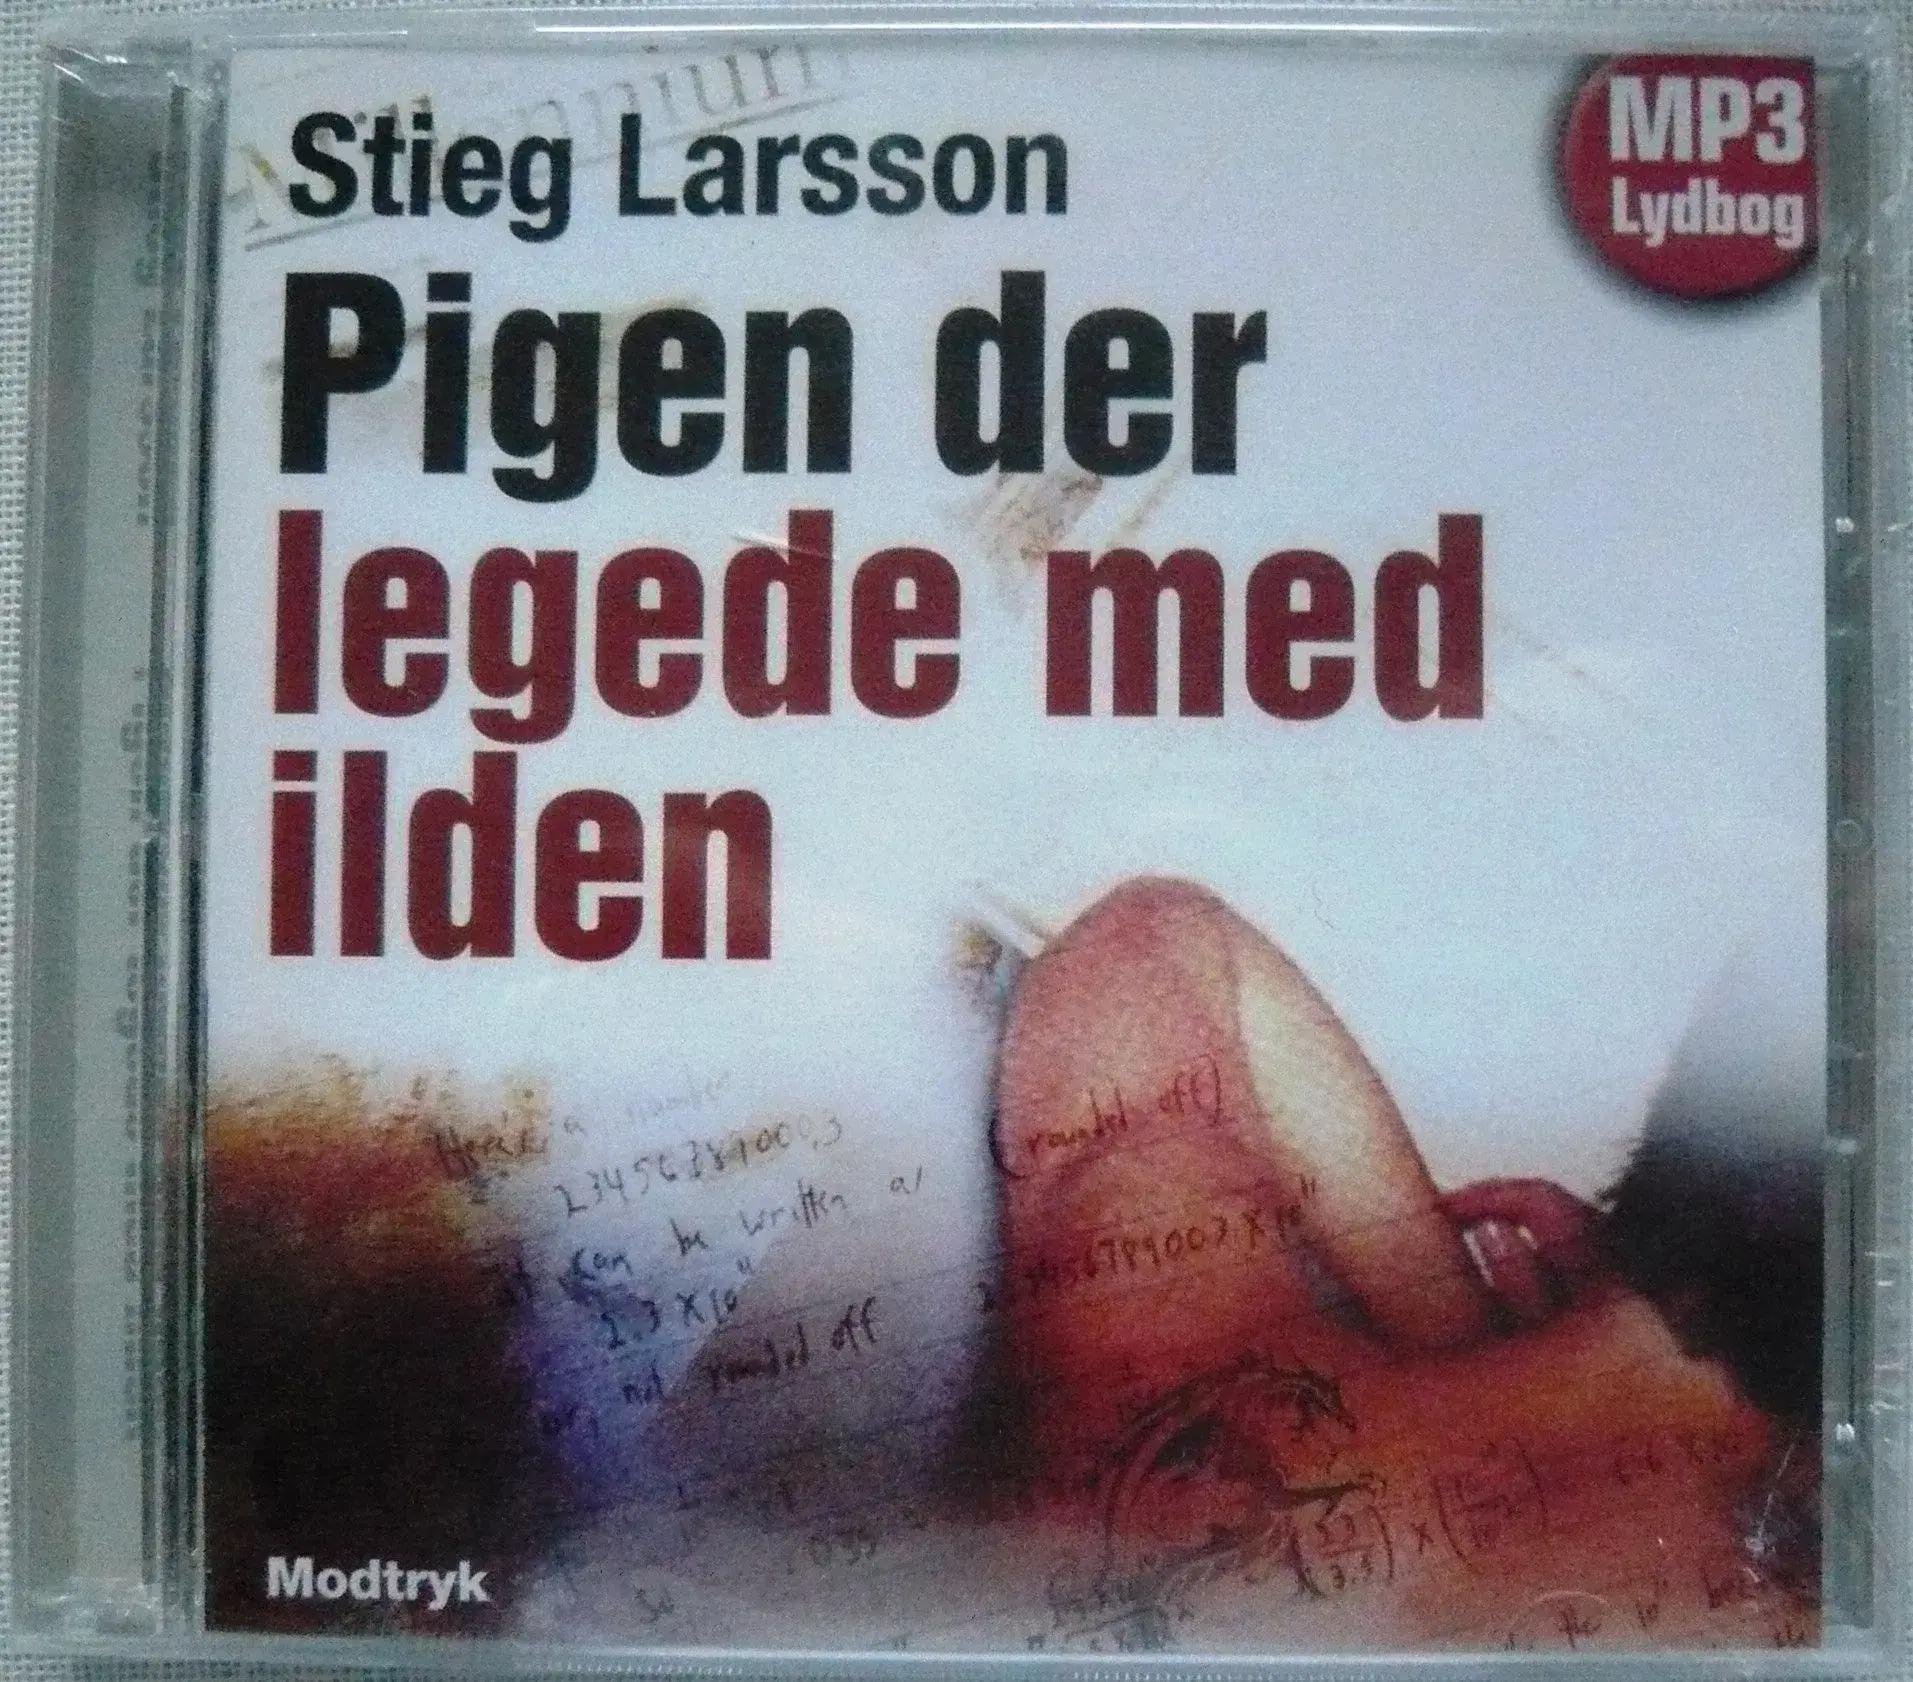 MP3 lydbøger af Stig Larsson